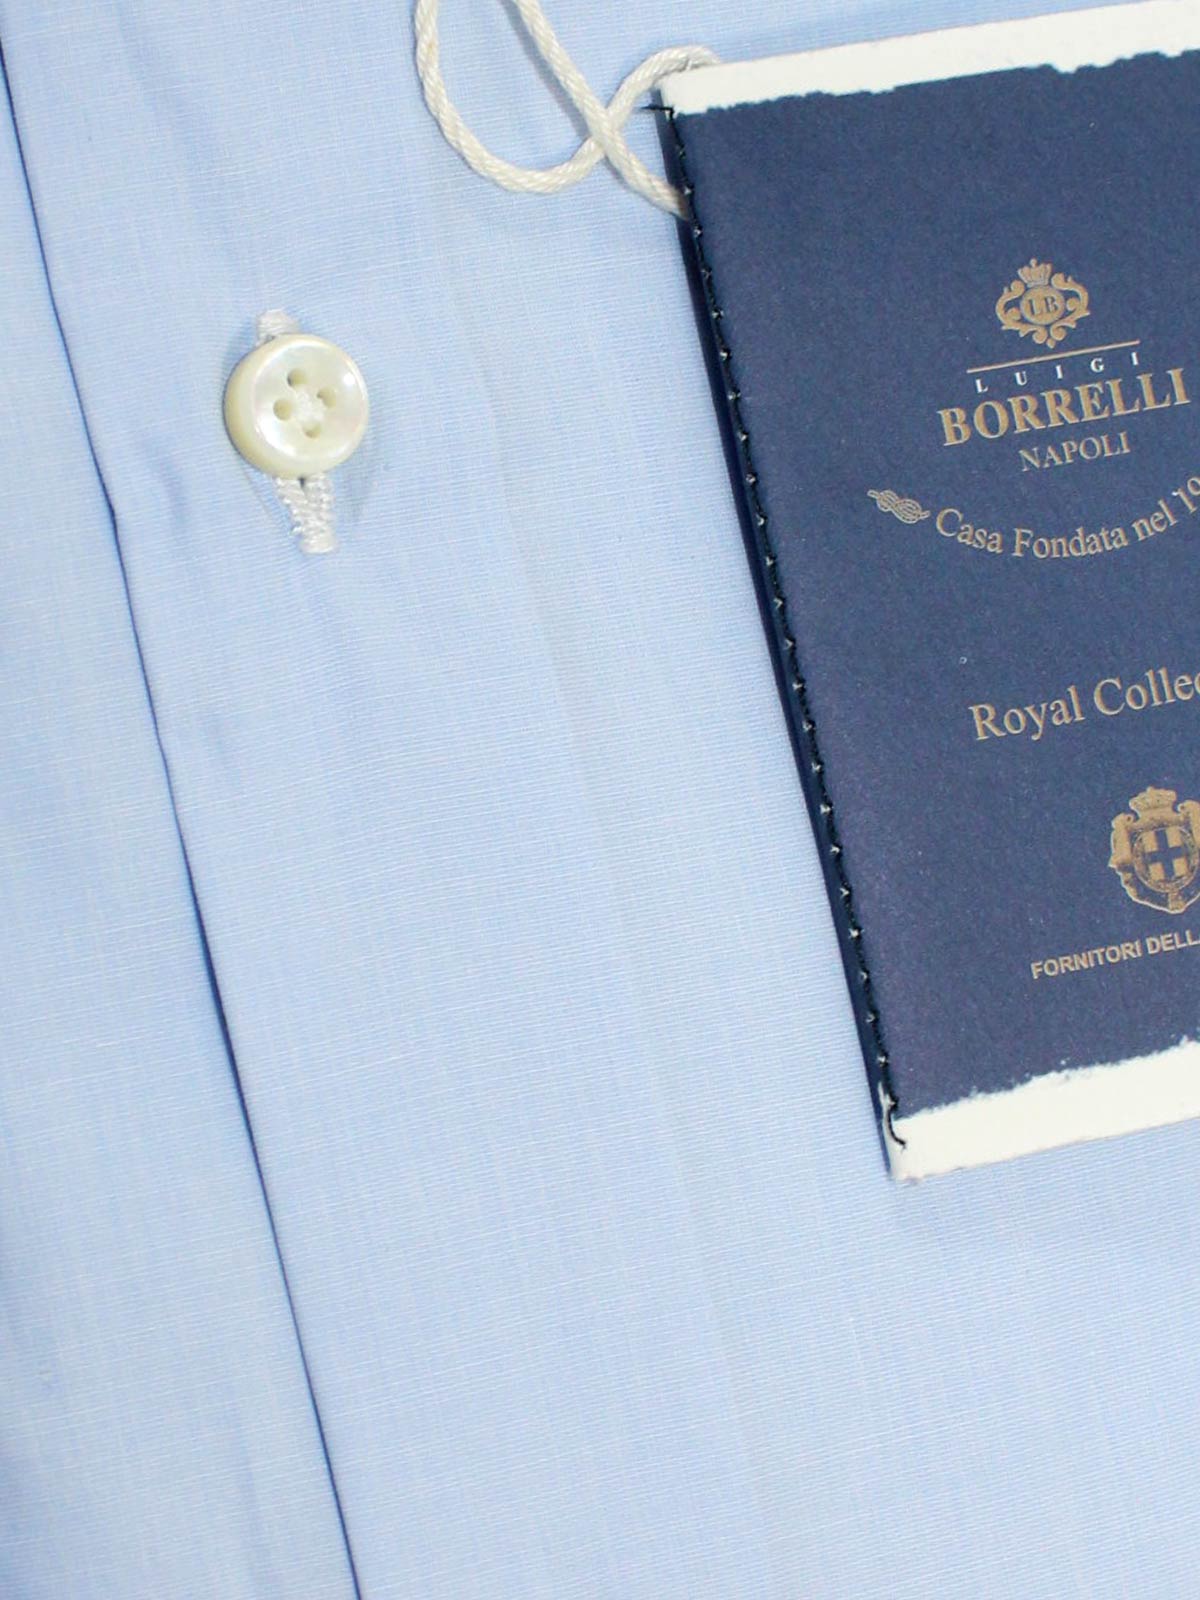 Borrelli Dress Shirt Royal Collection 